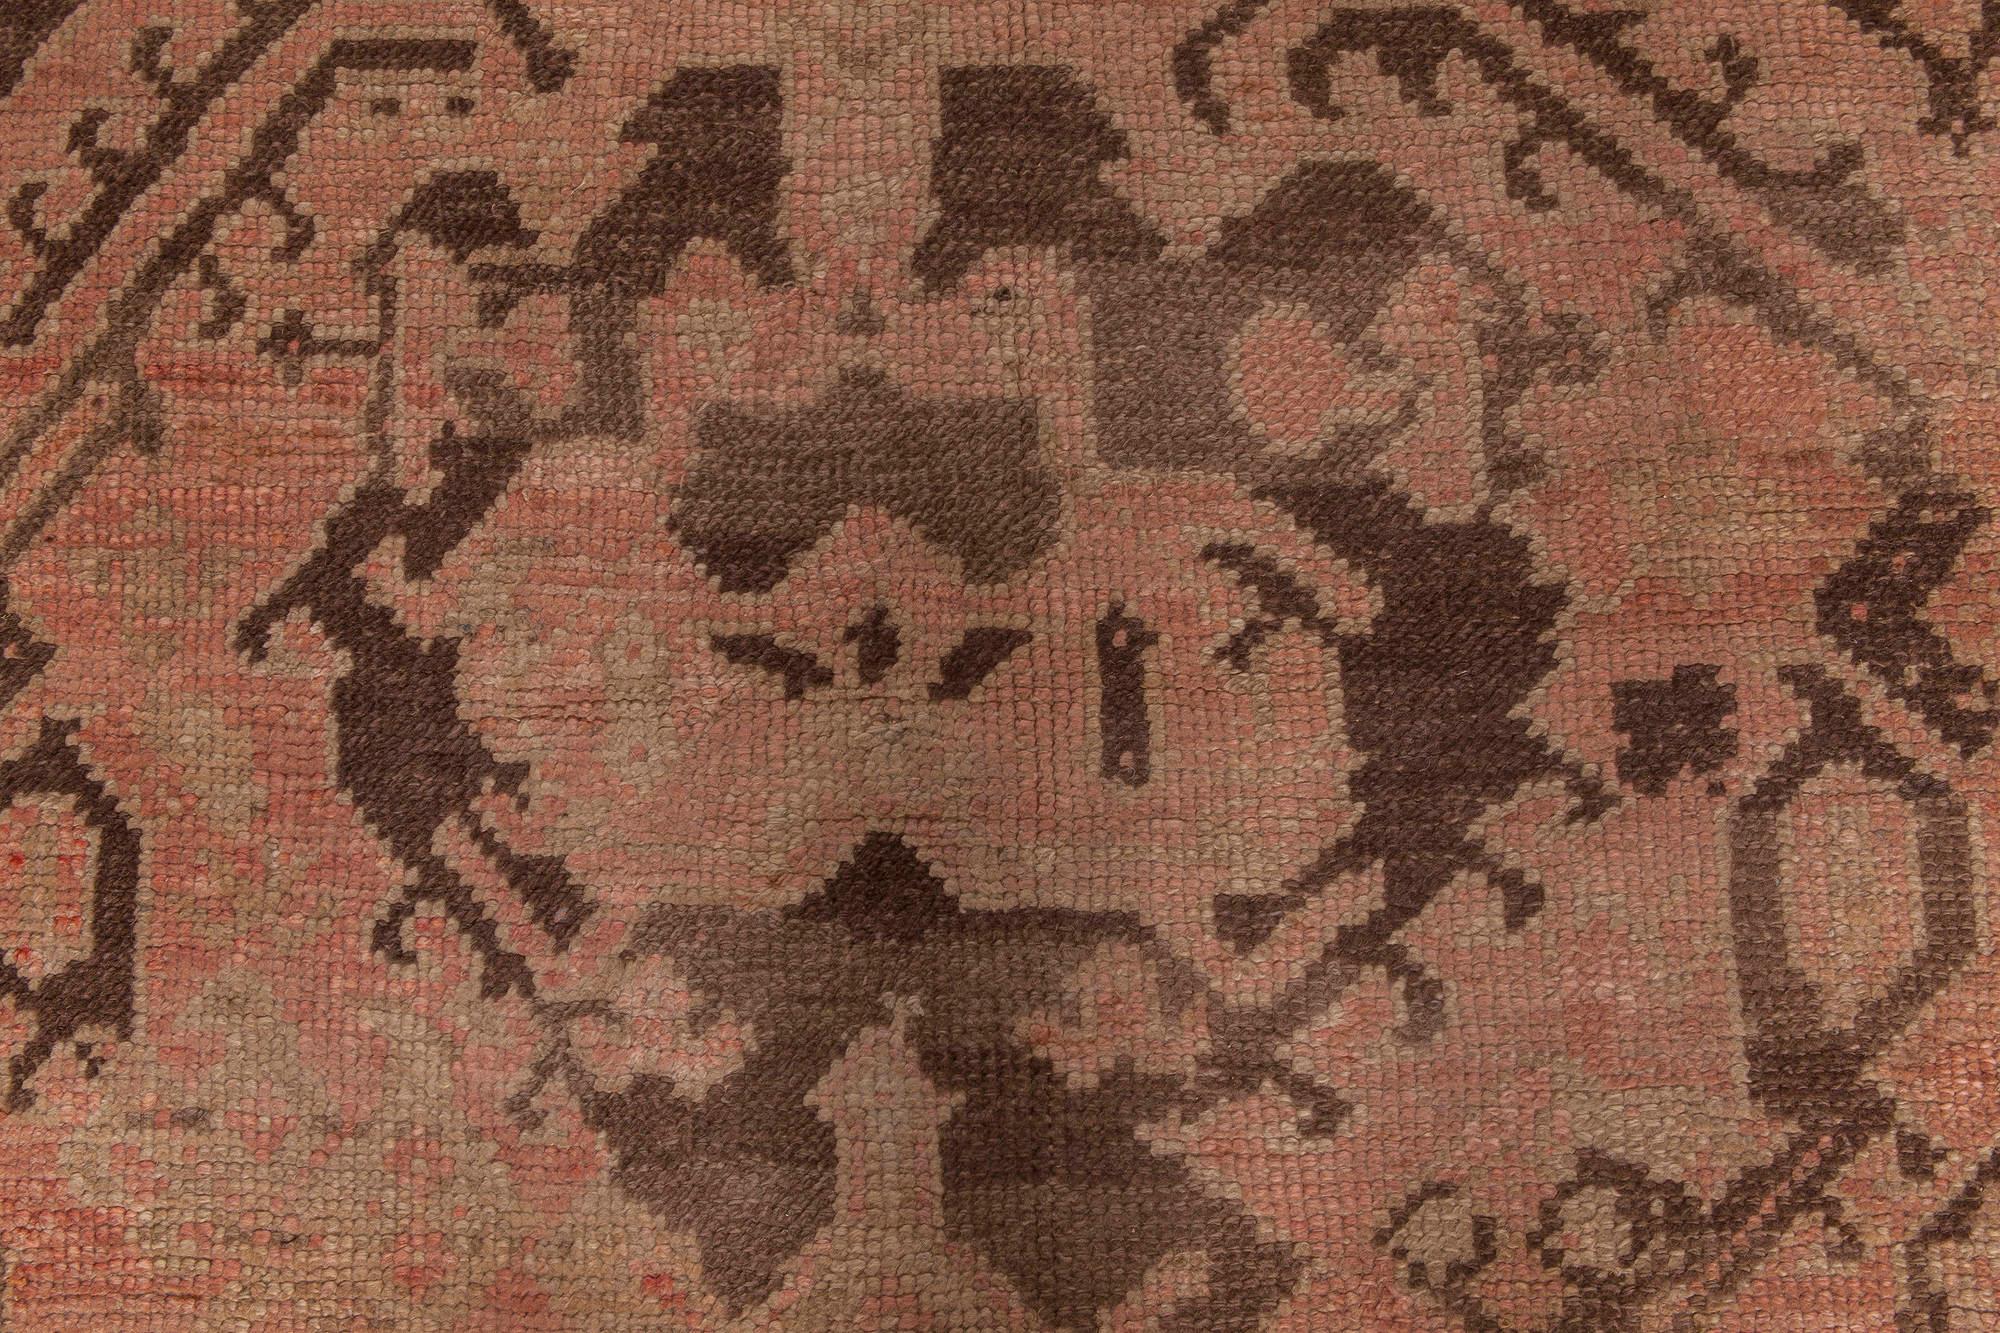 1900s Turkish Oushak hand-dyed wool rug
Size: 17'6